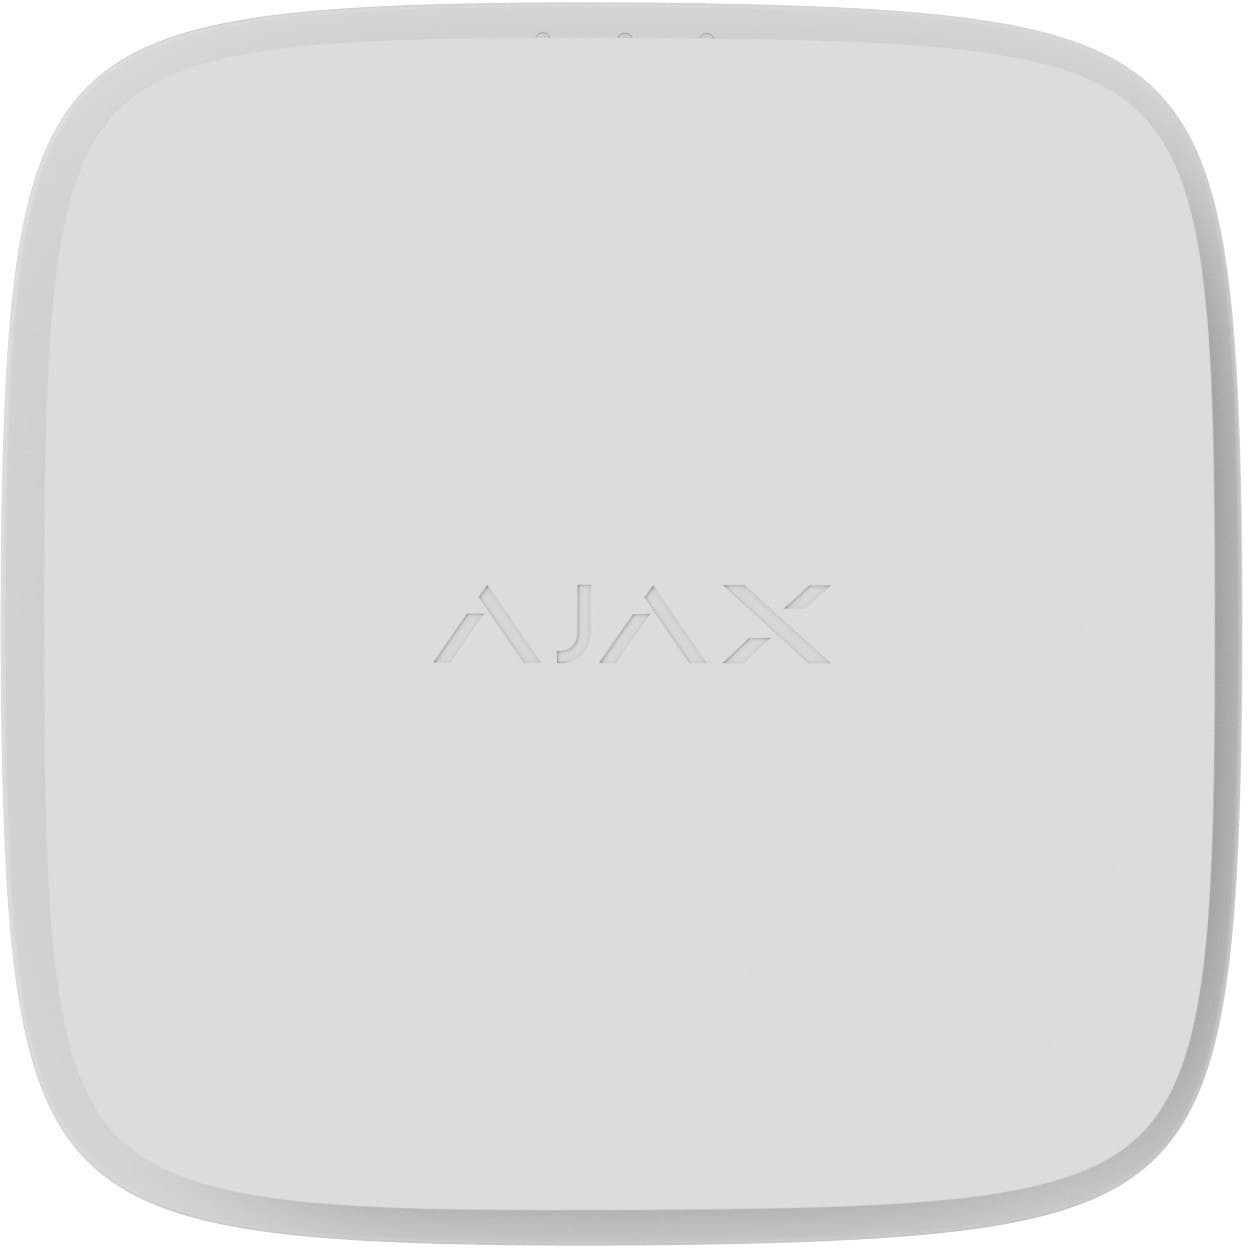 Охранные датчики Ajax FireProtect 2 SB (Heat/Smoke/CO)